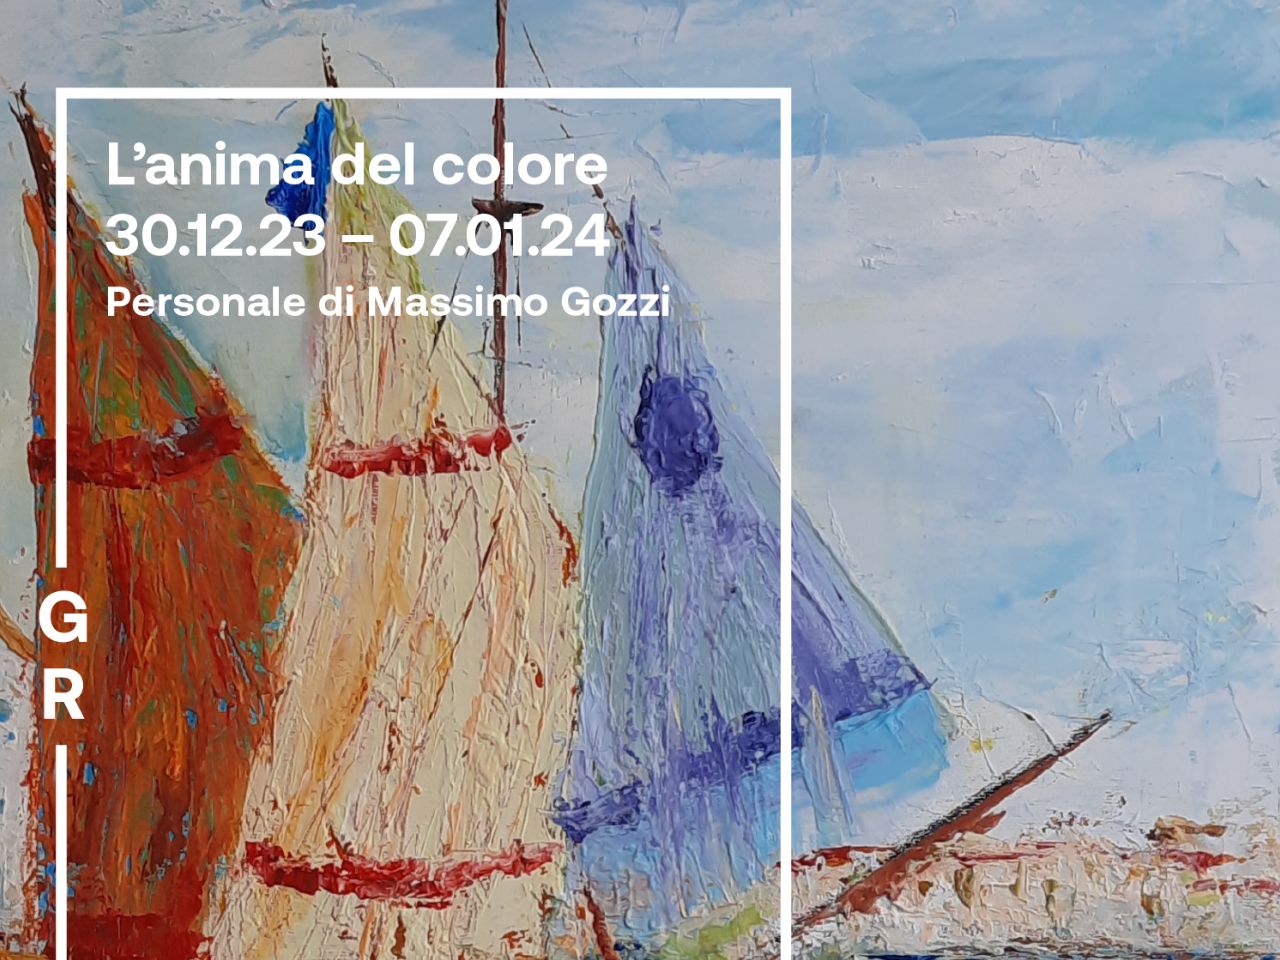 Sabato 30, l’inaugurazione de “L’anima del colore” alla Galleria Rossini